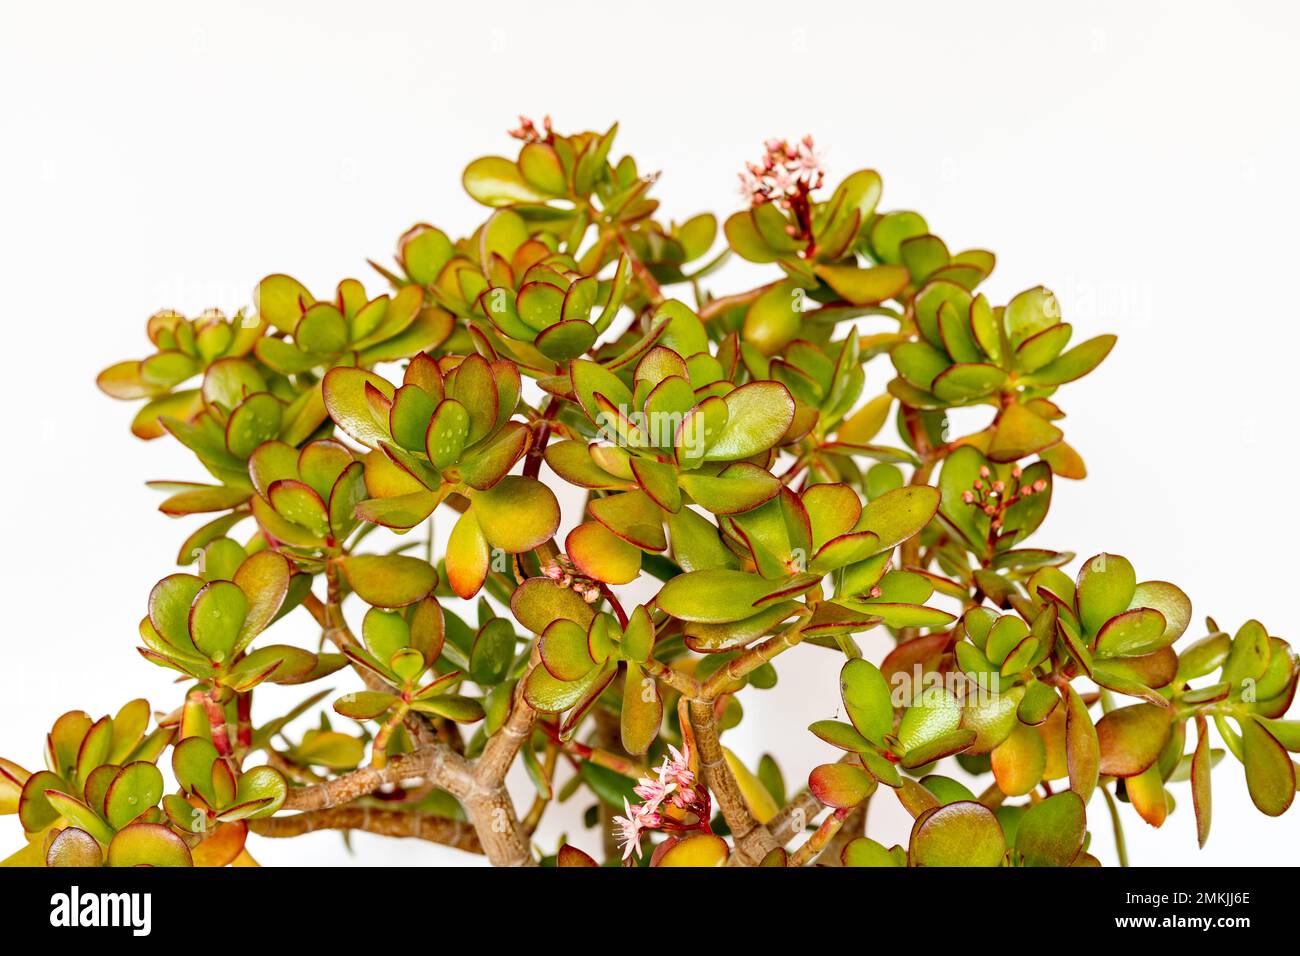 Crassula ovata flowering plant on white isolated background Stock Photo